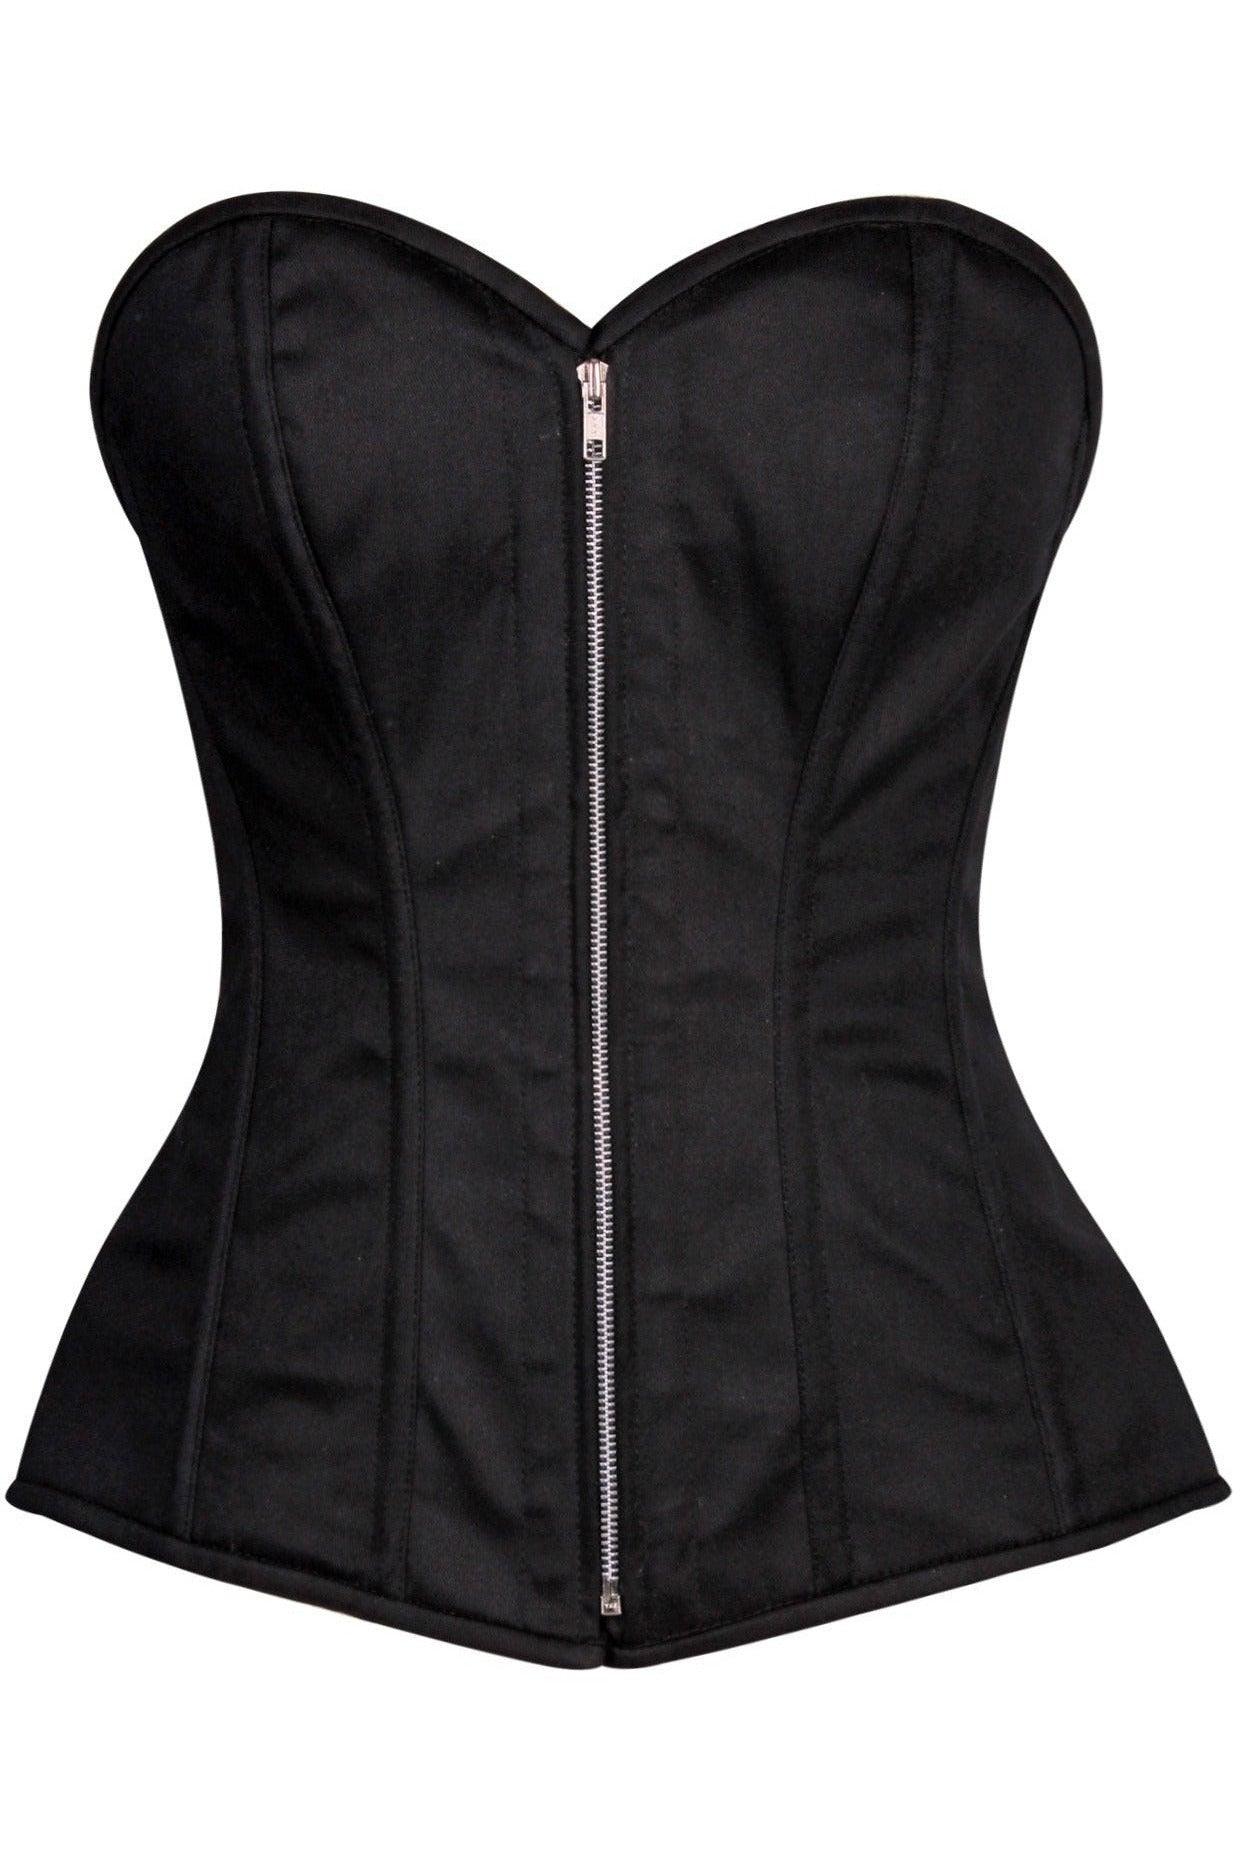 Top Drawer Black Cotton Steel Boned Corset w/Zipper - AMIClubwear